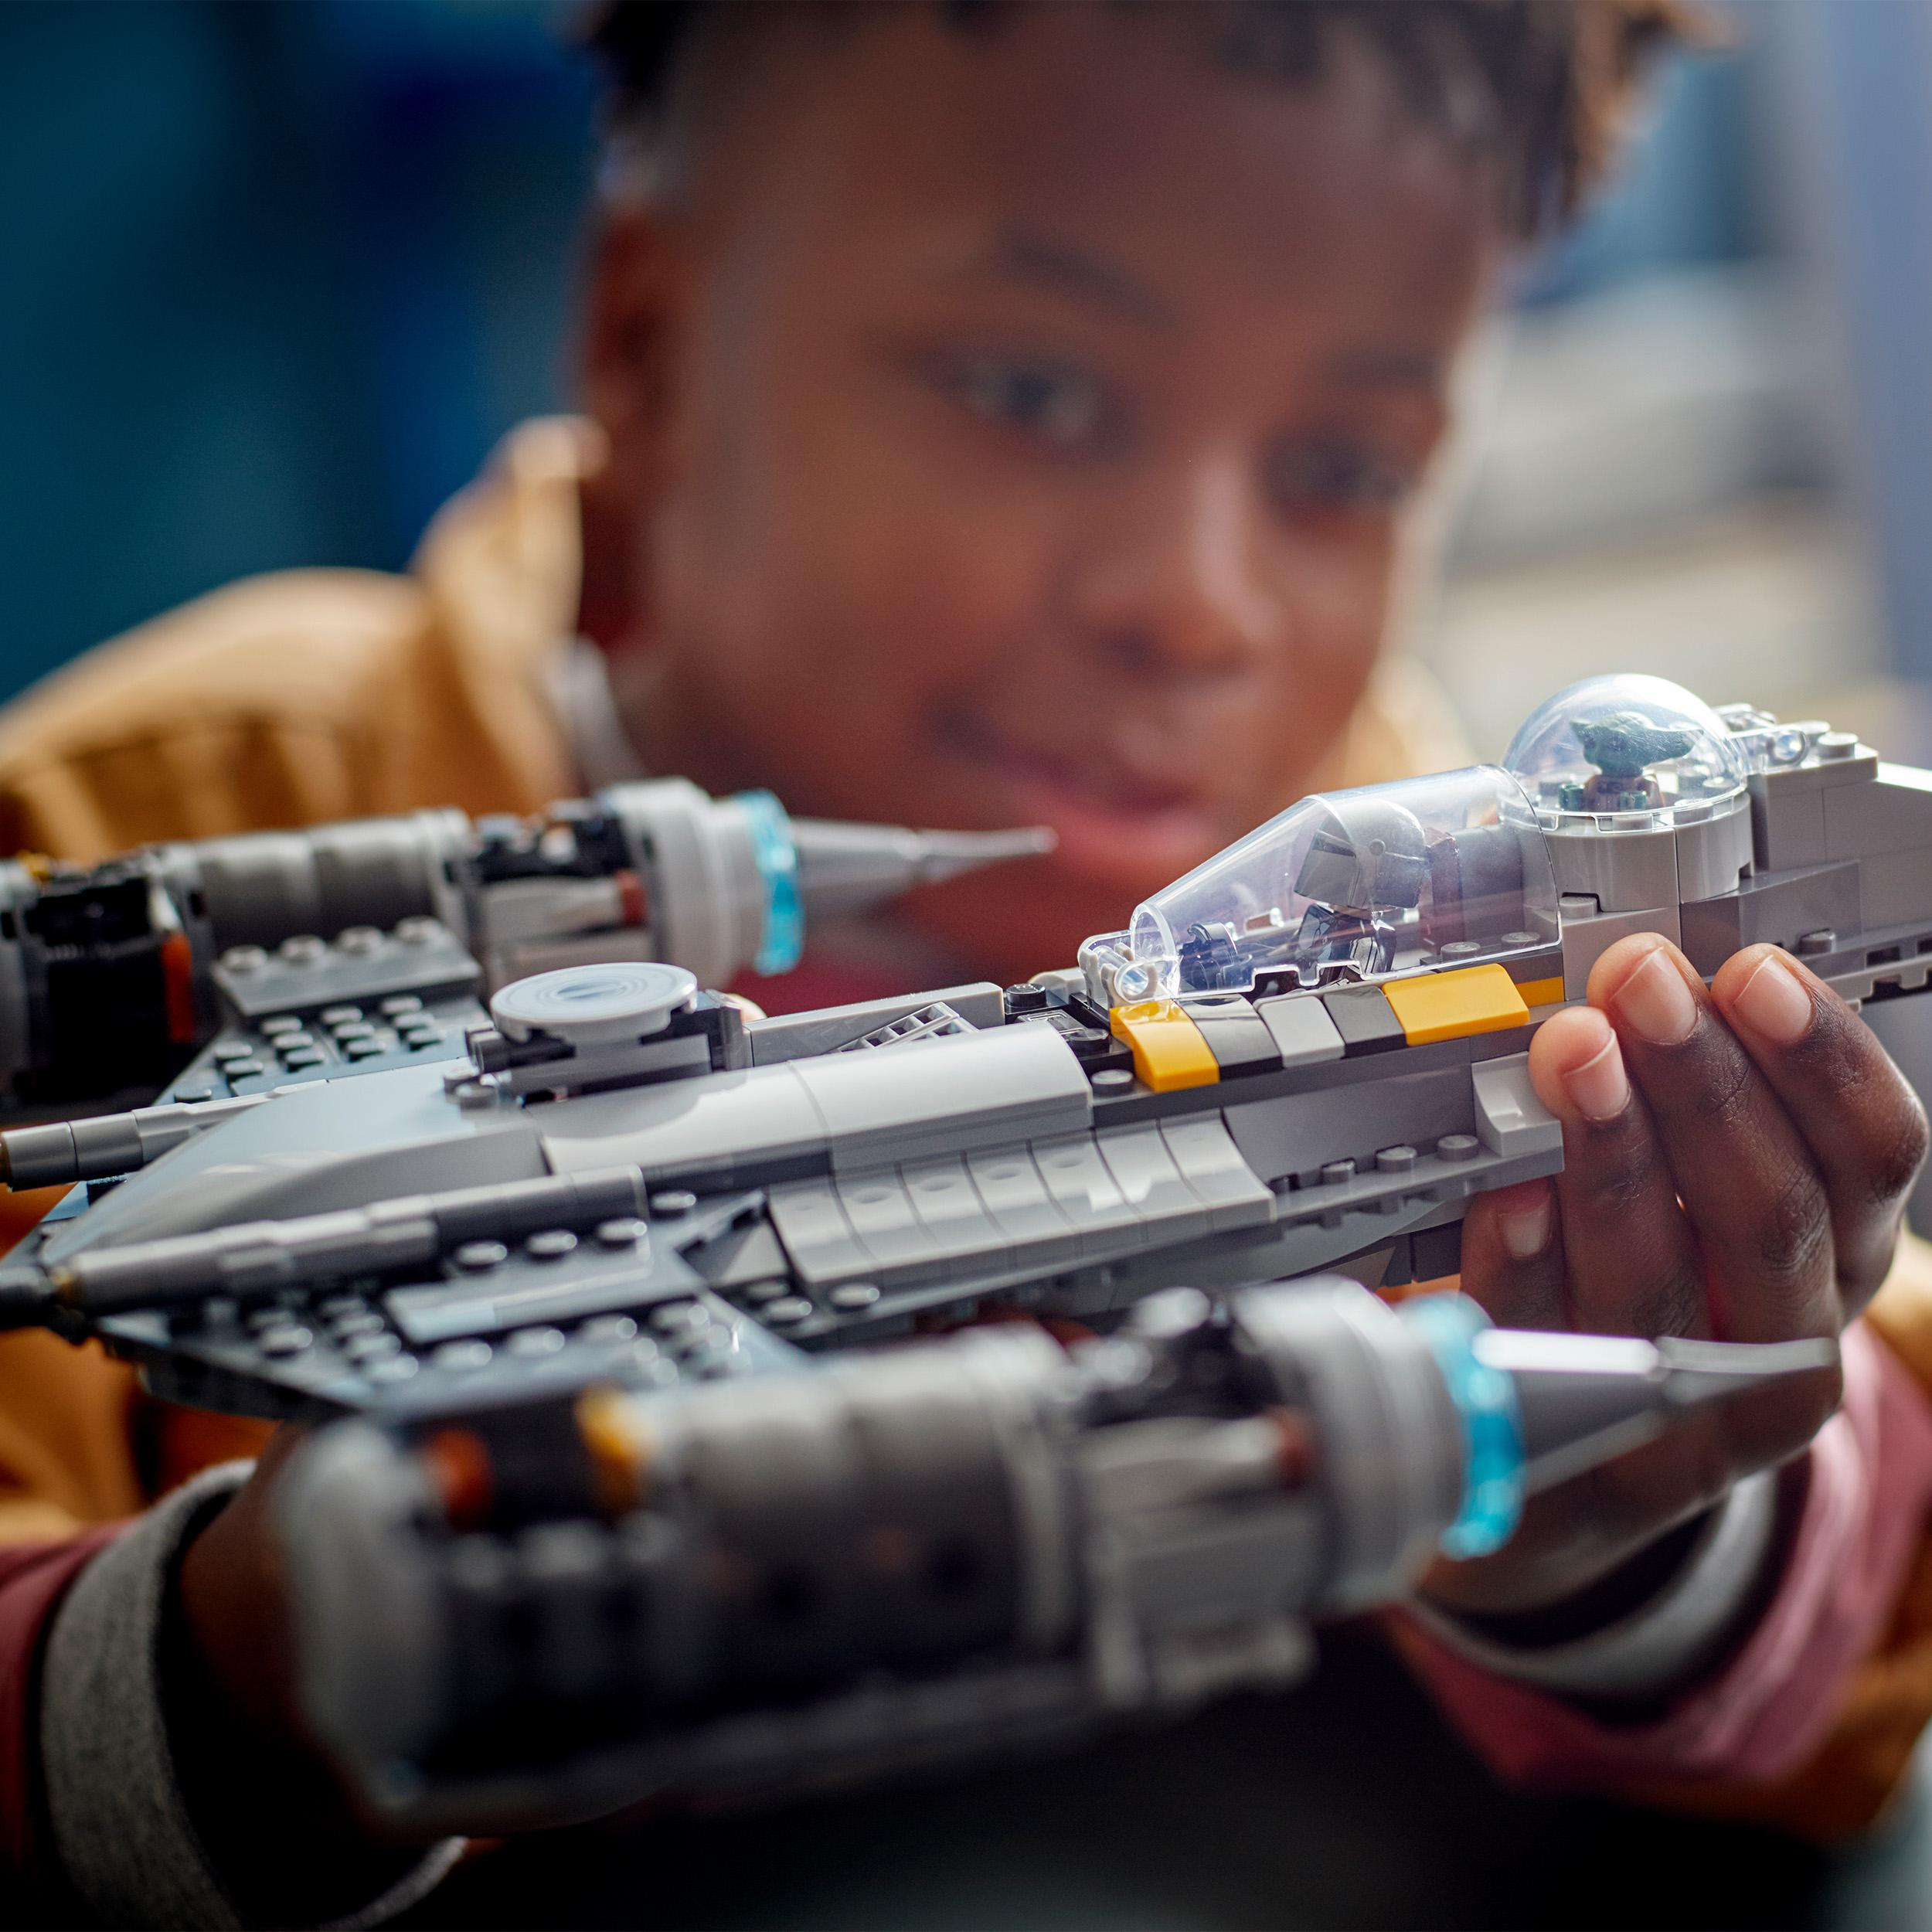 LEGO Star Wars 75325 Der Mandalorianers N-1 Mehrfarbig des Starfighter Bausatz